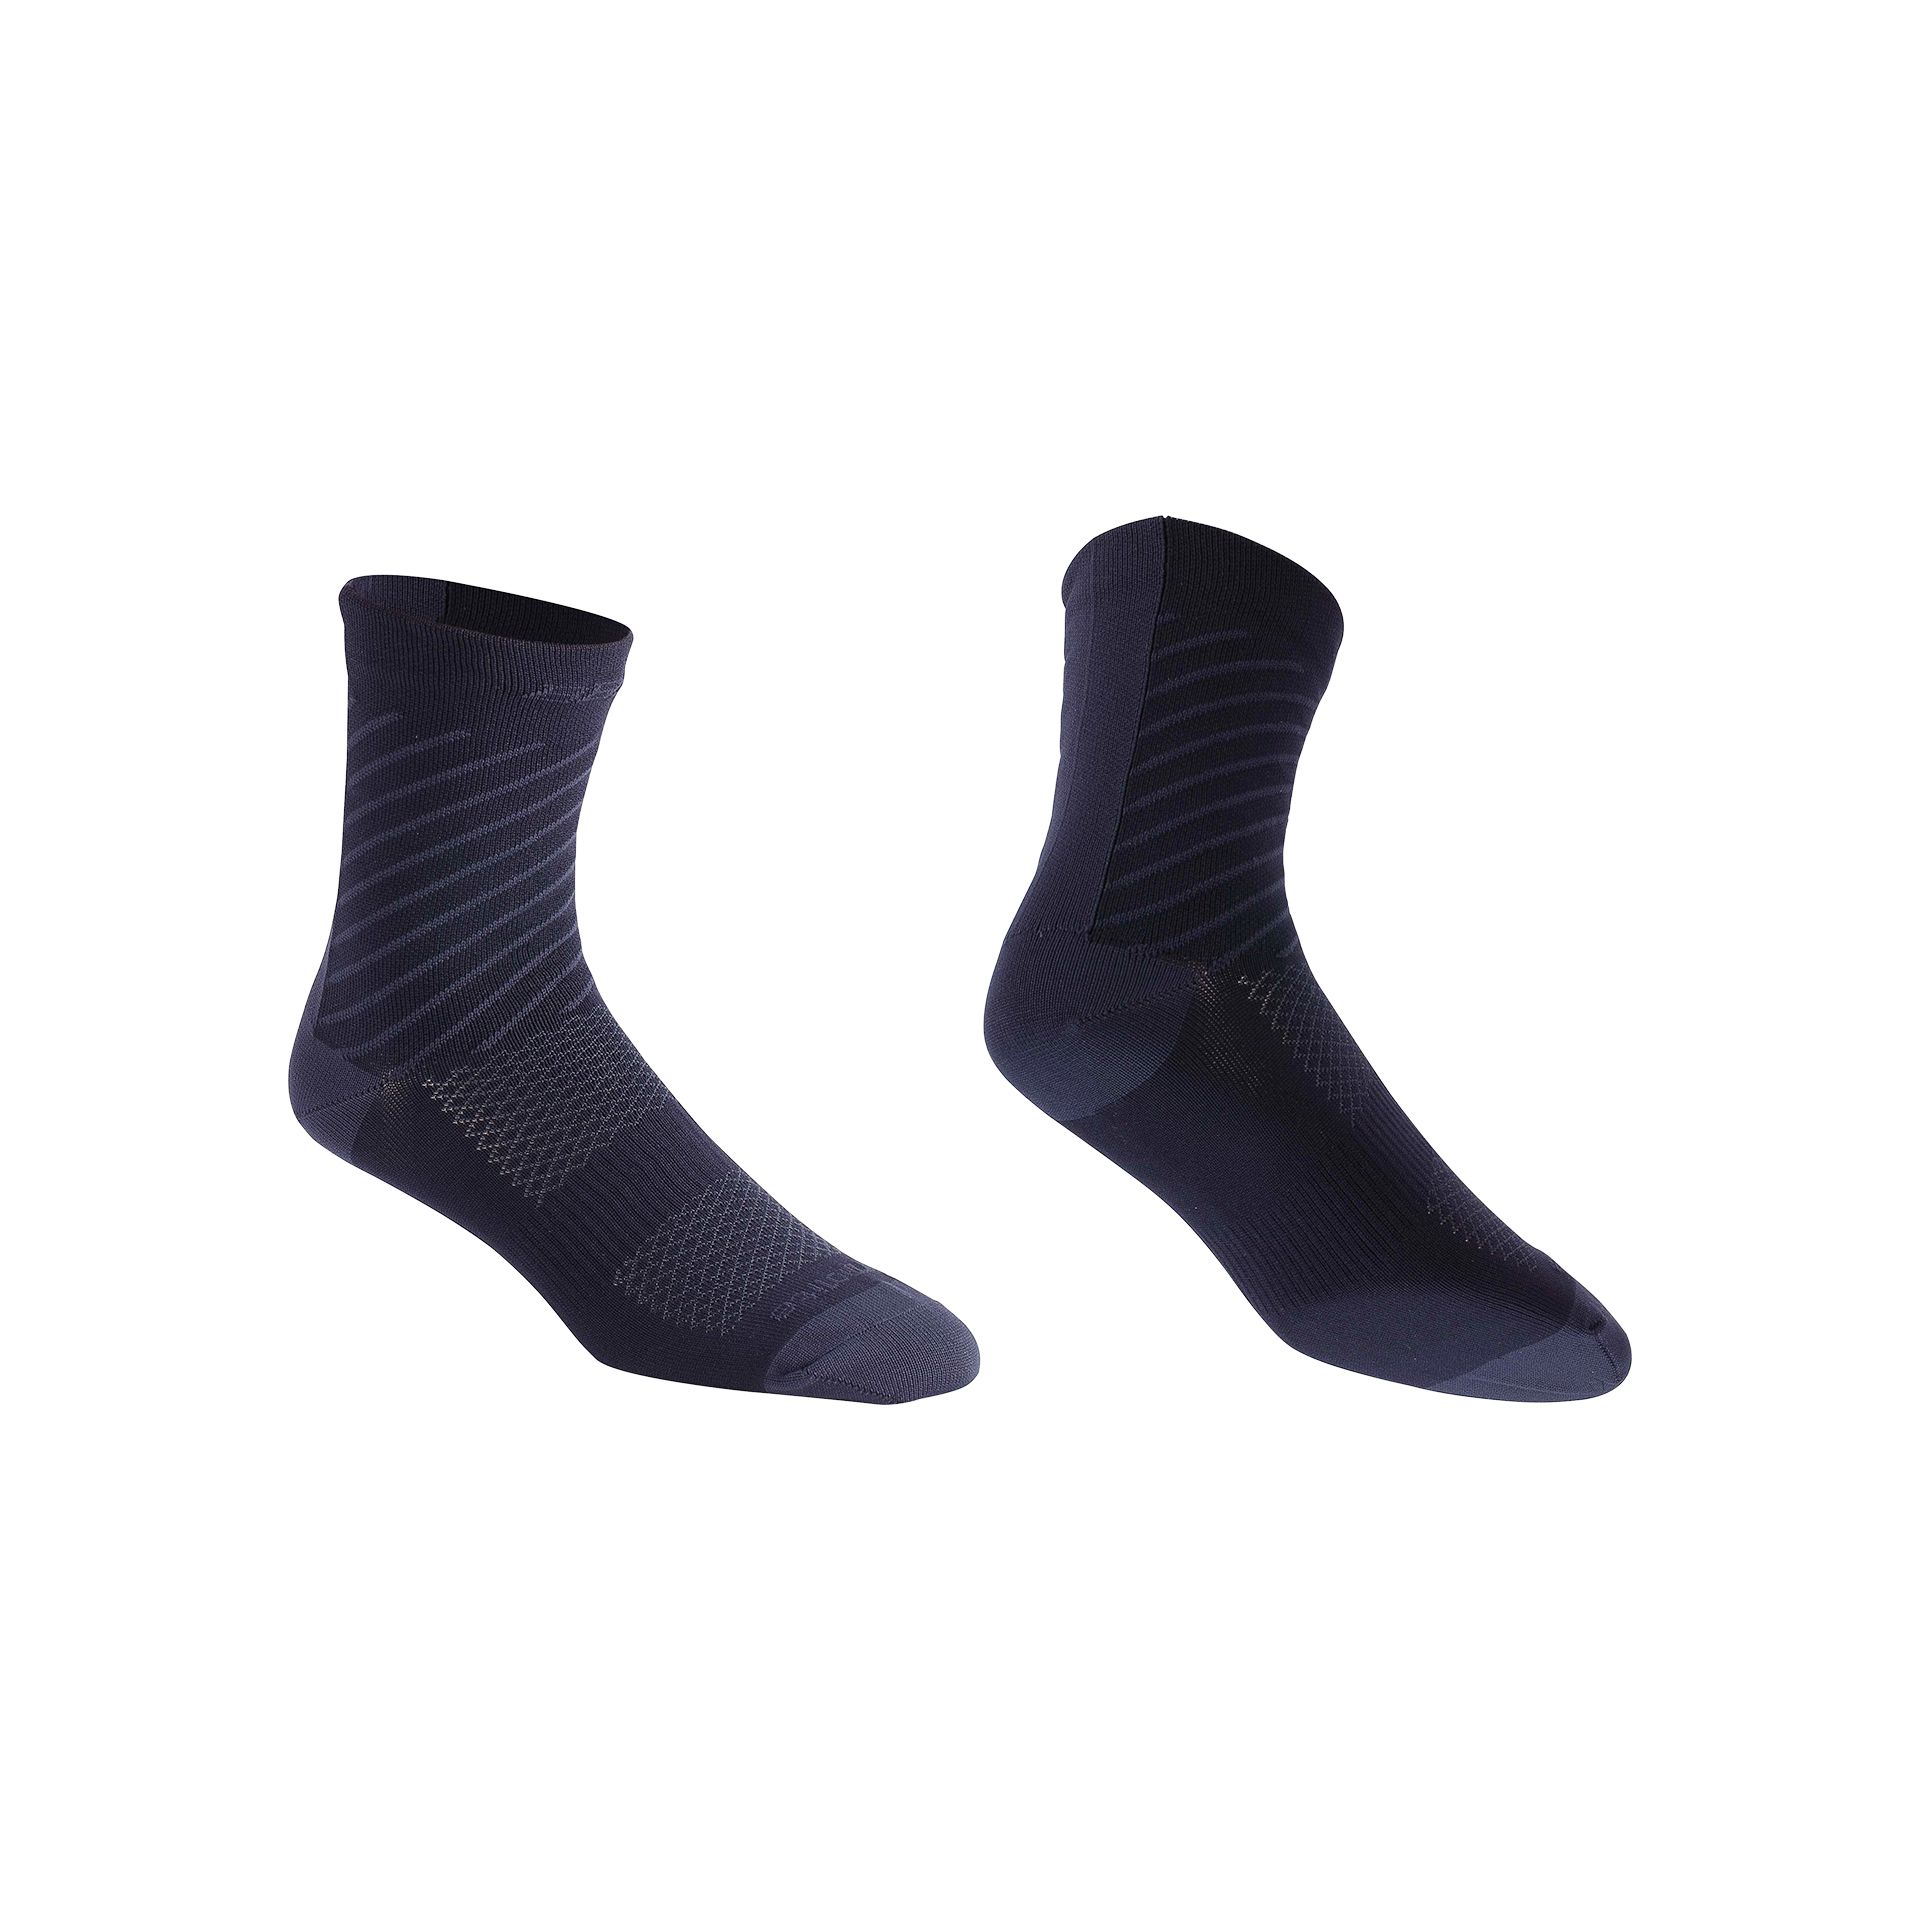 Amsler - Socken Thermofeet schwarz 35-38 150mm Bund, für kalte Wetterbedingungen